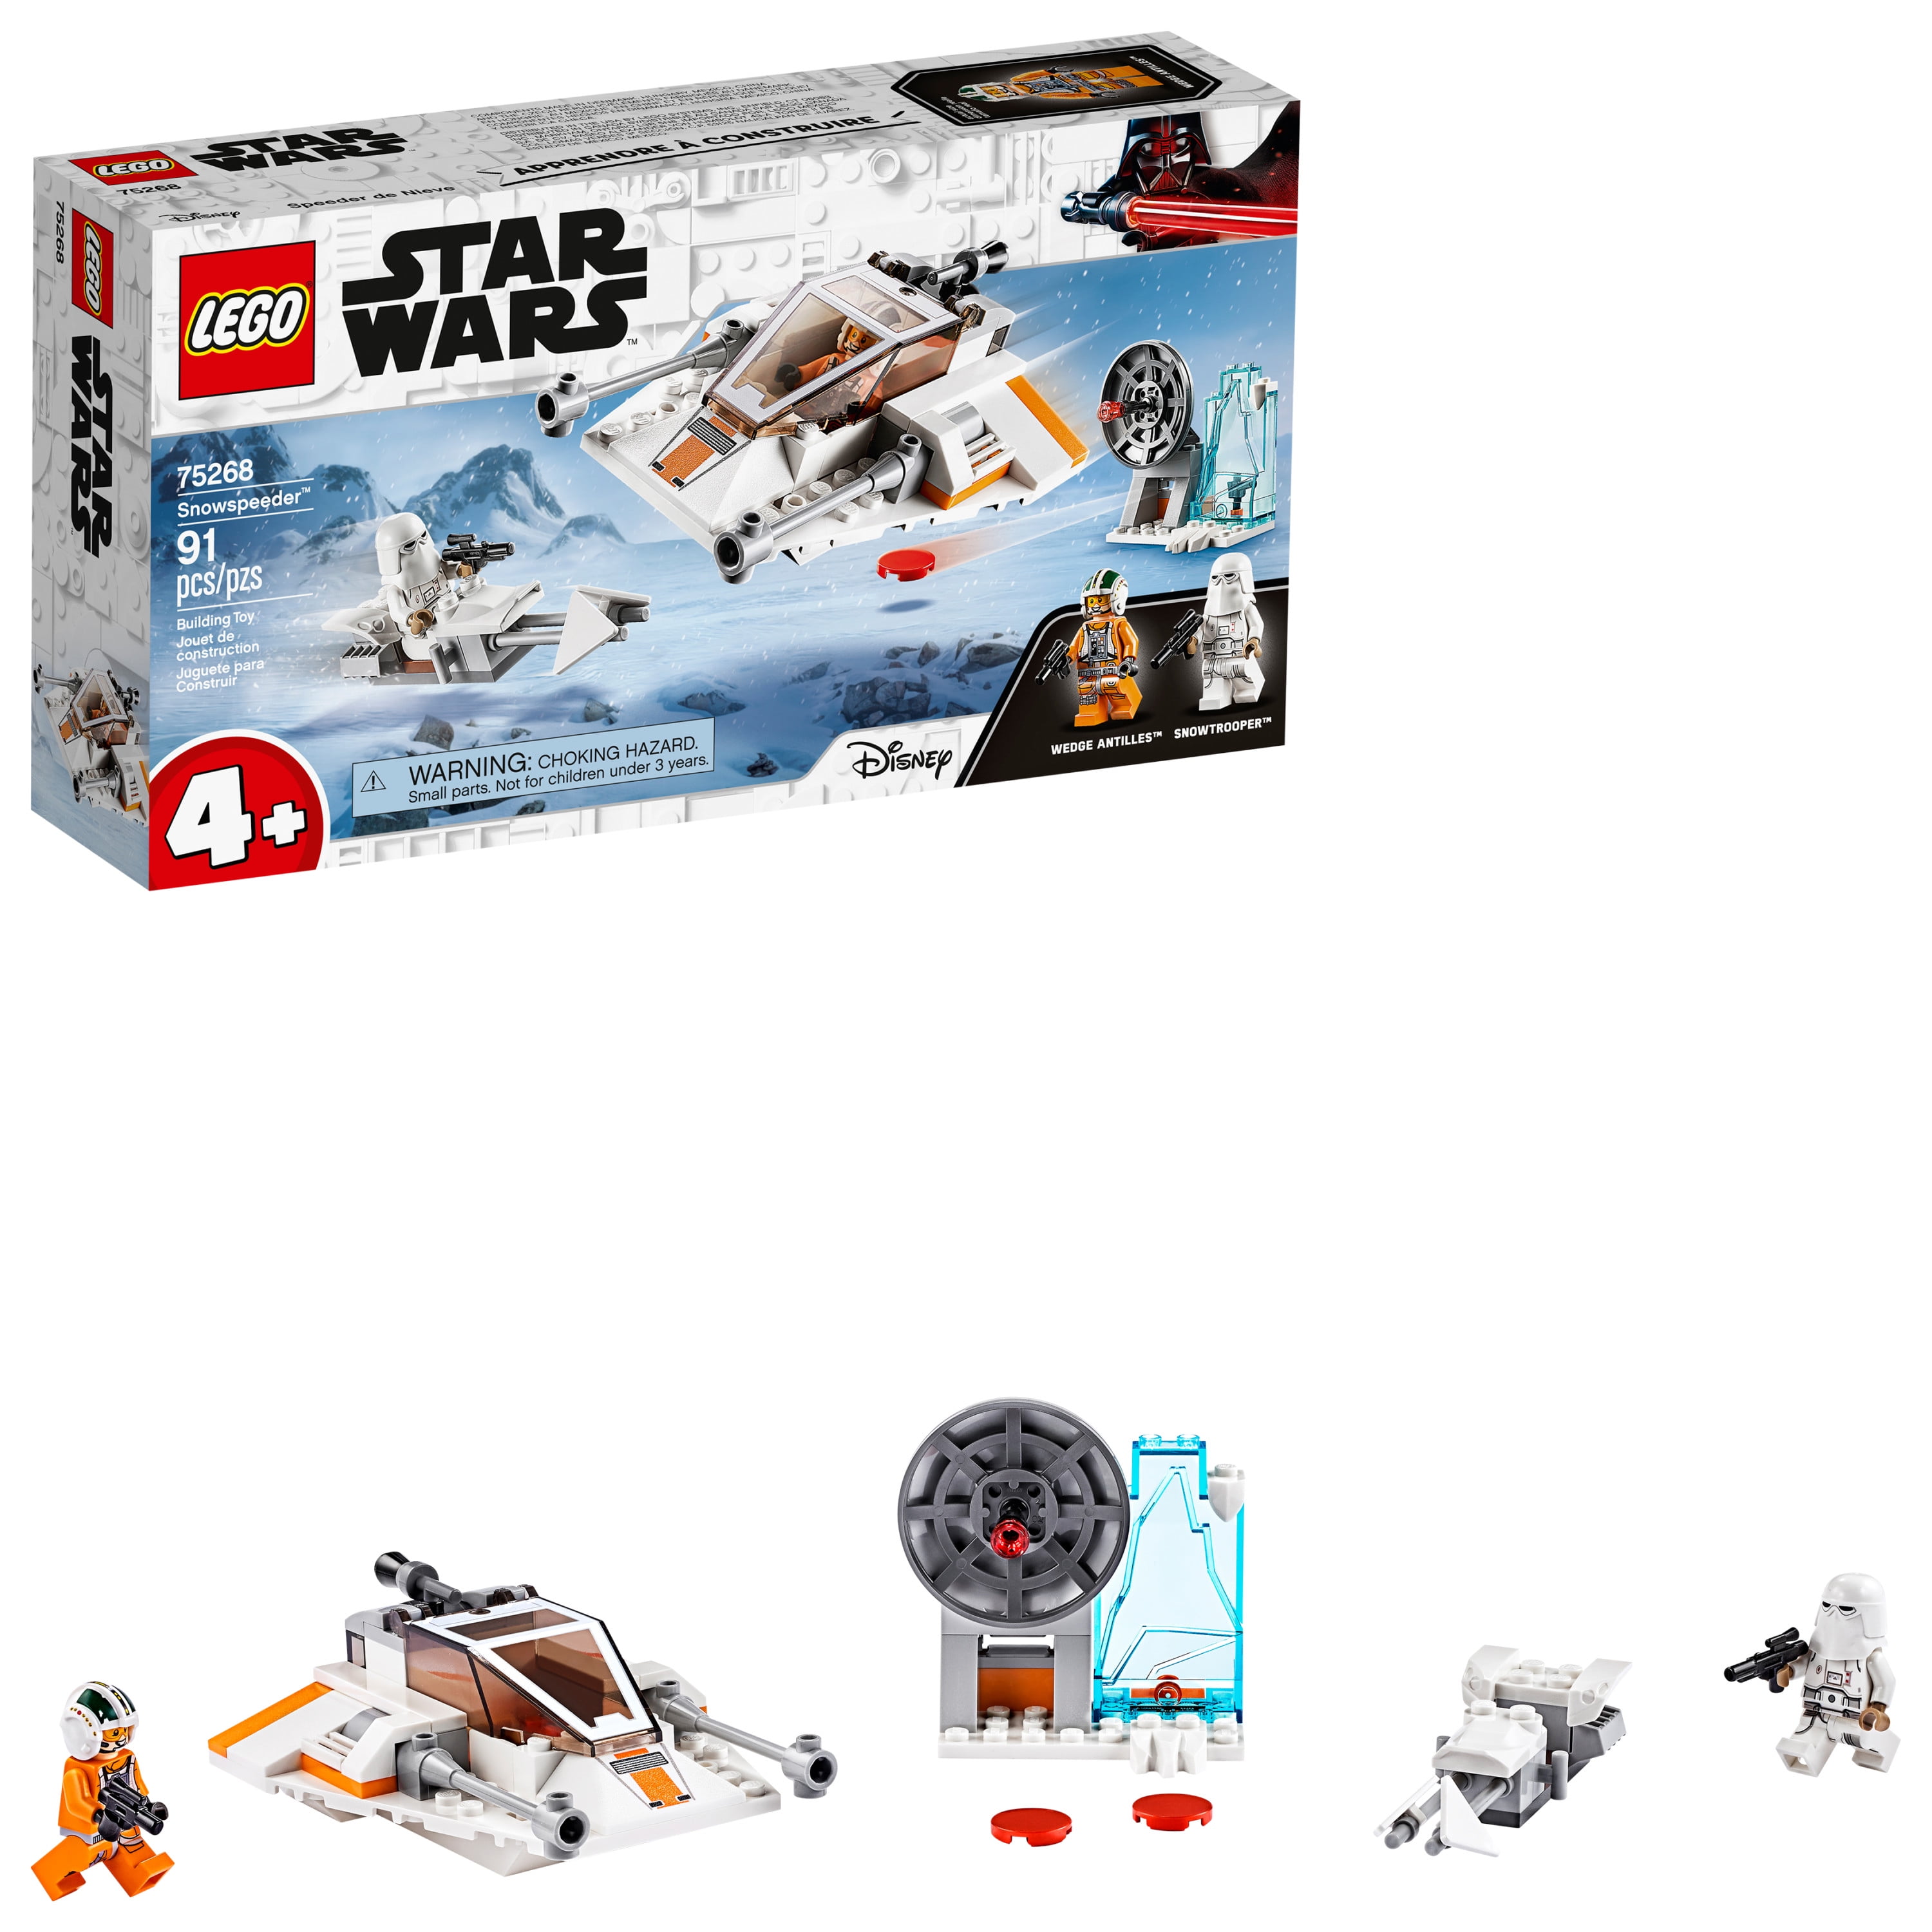 LEGO® Star Wars Figur Wedge Antilles SW1081 aus Set 75268 Snowspeeder™ 